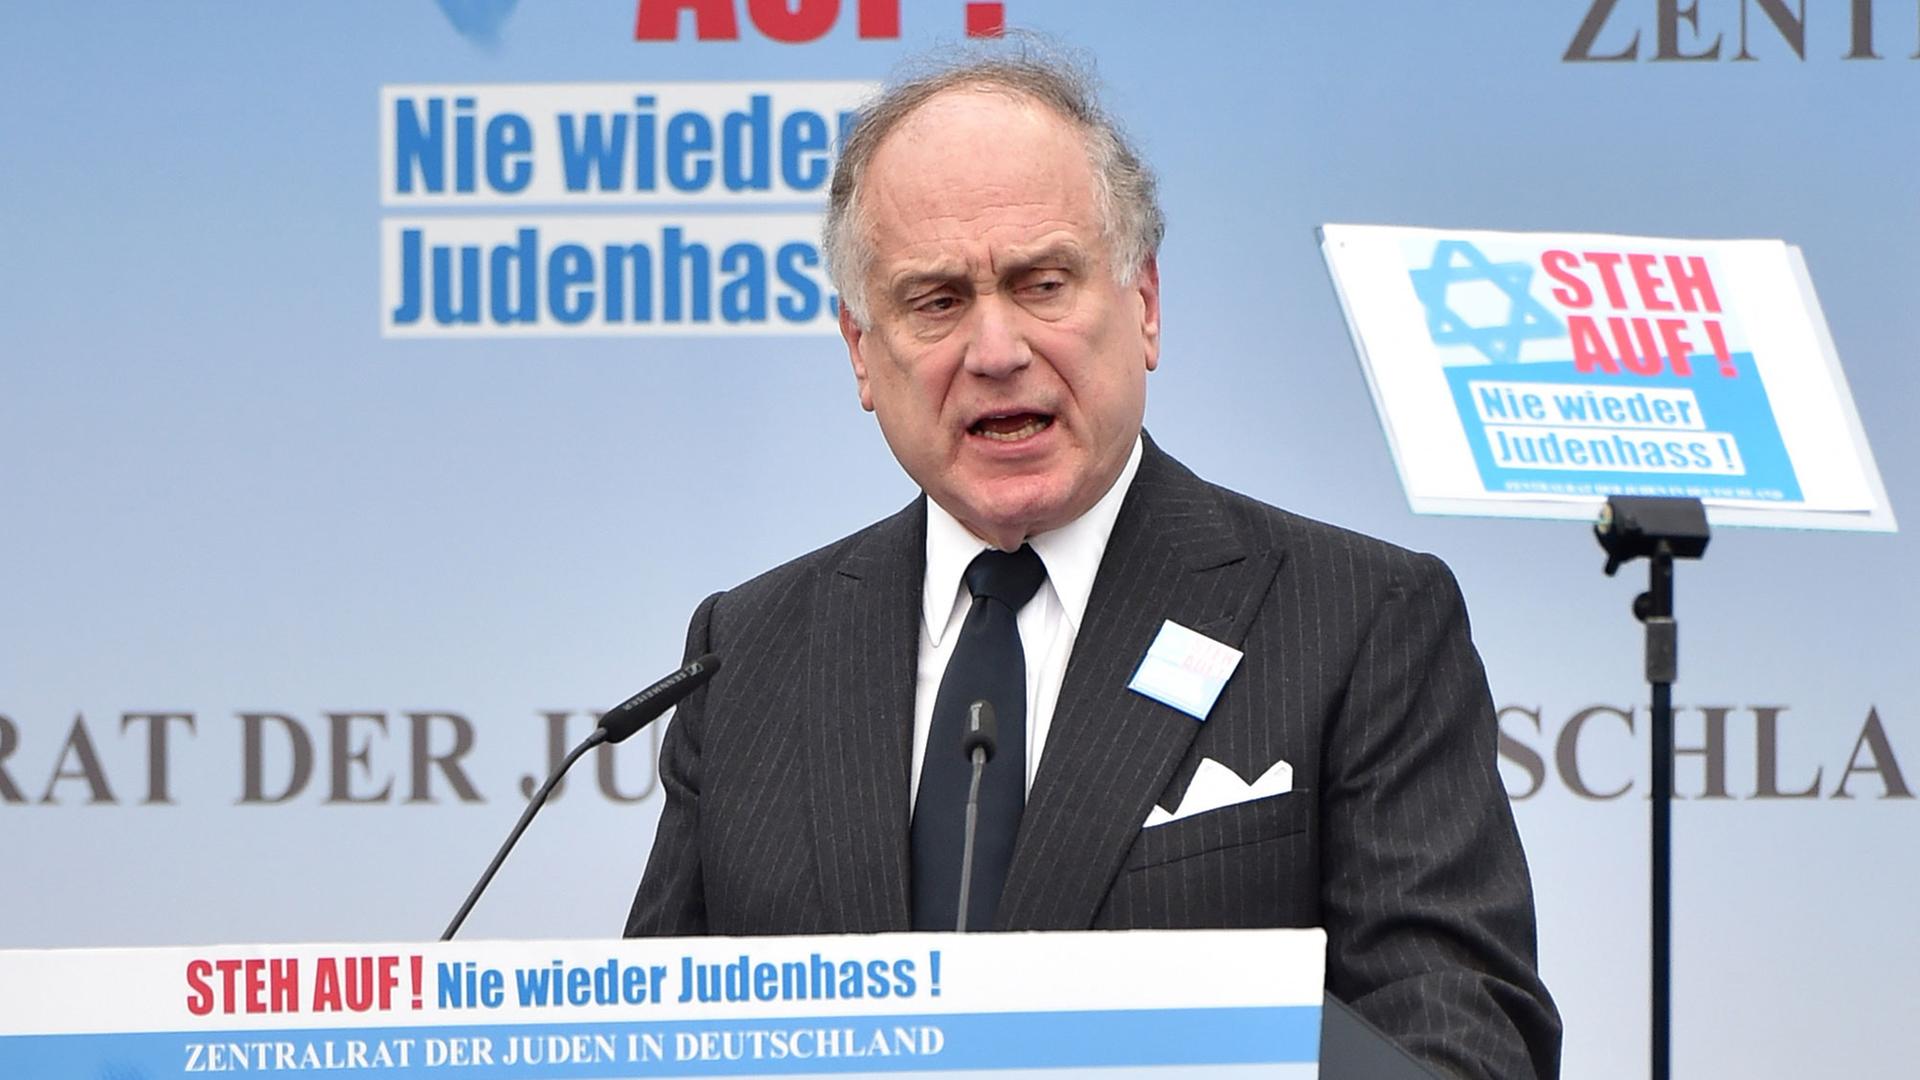 Der Präsident des World Jewish Congress, Ronald S. Lauder, spricht zu den Teilnehmern der Kundgebung "Steh auf! Nie wieder Judenhass!" vor dem Brandenburger Tor in Berlin.